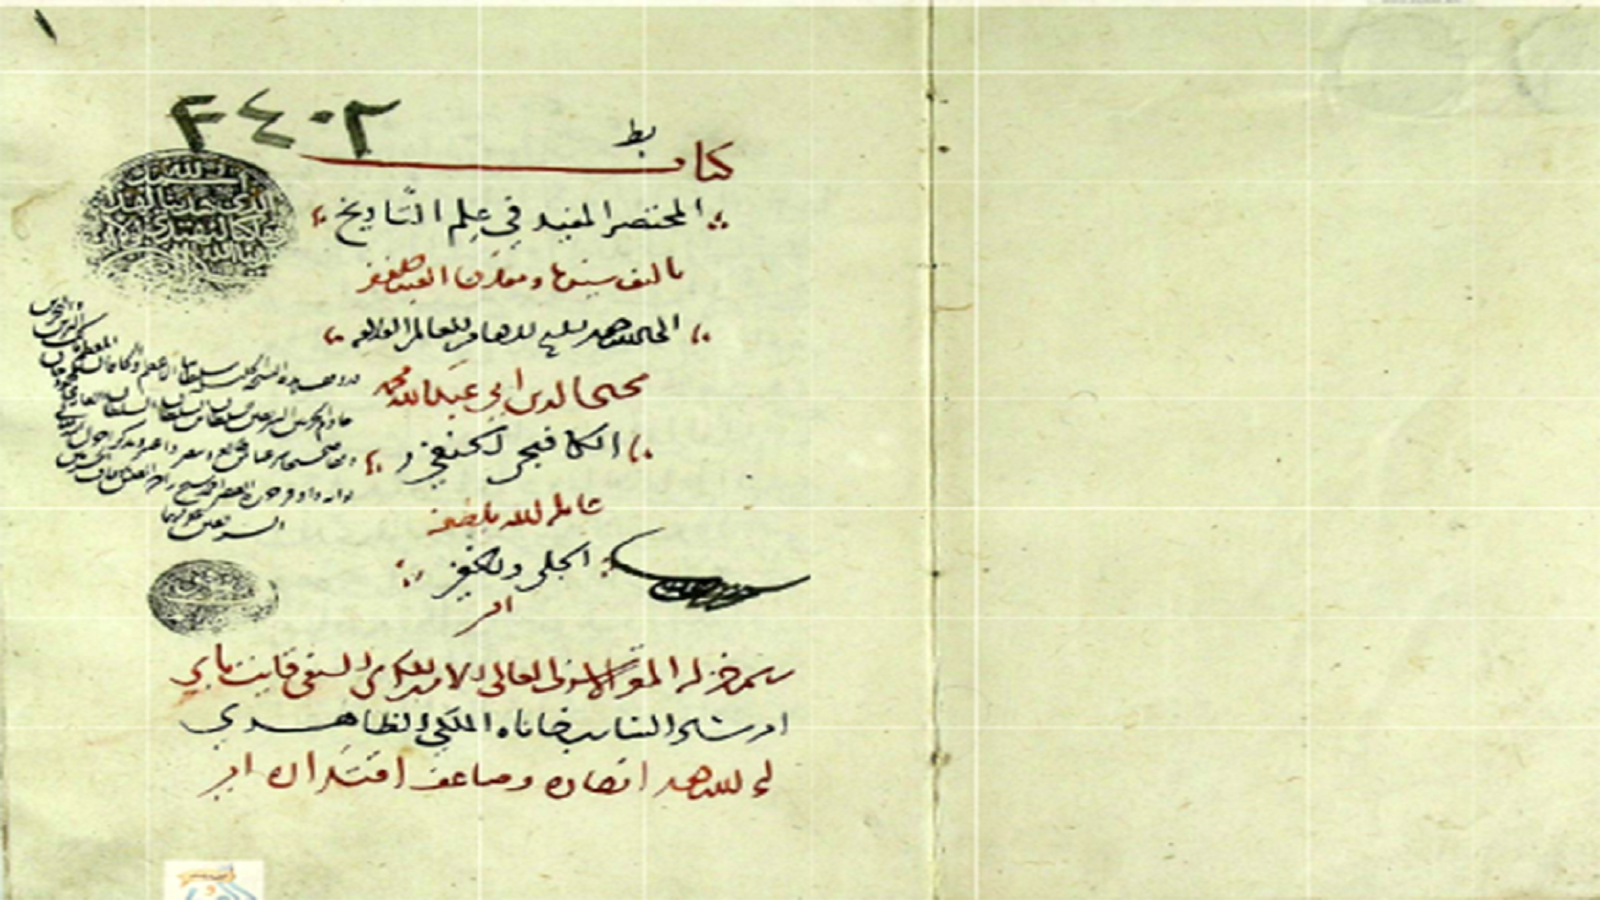 مخطوطة "المختصر غي علم التاريخ" مع ختمها الأصلي.